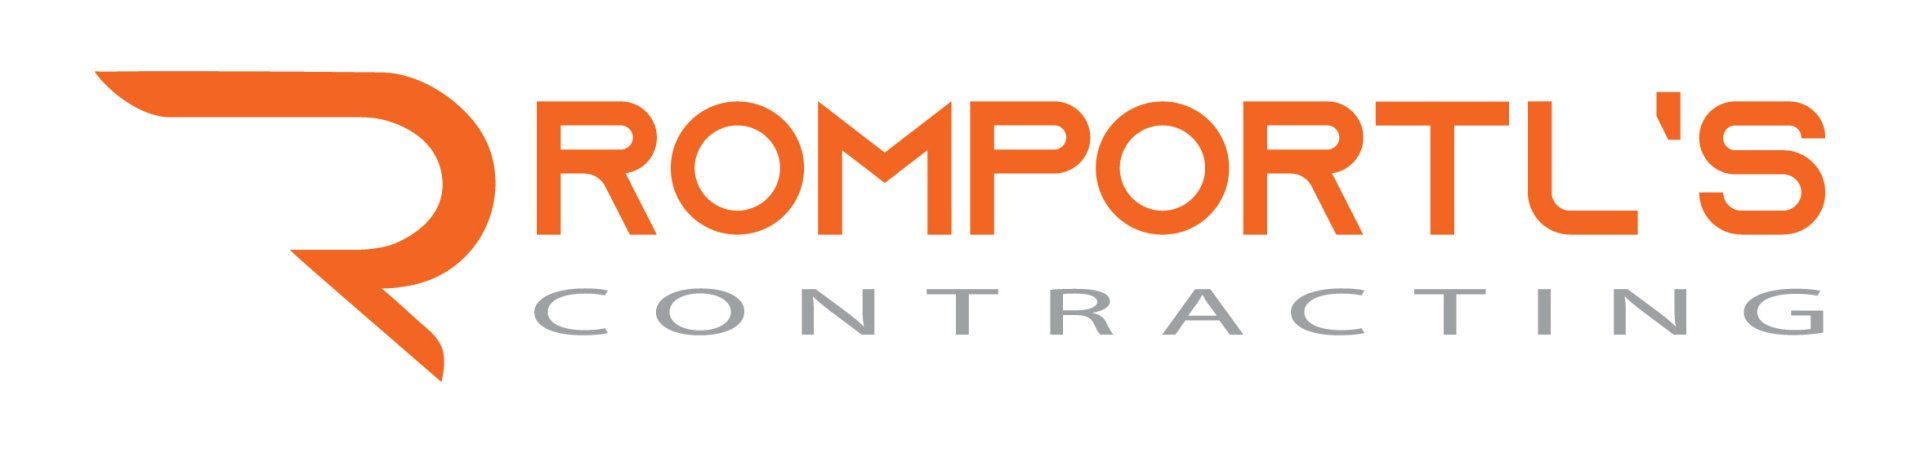 Romportls Contracting LLC - Logo